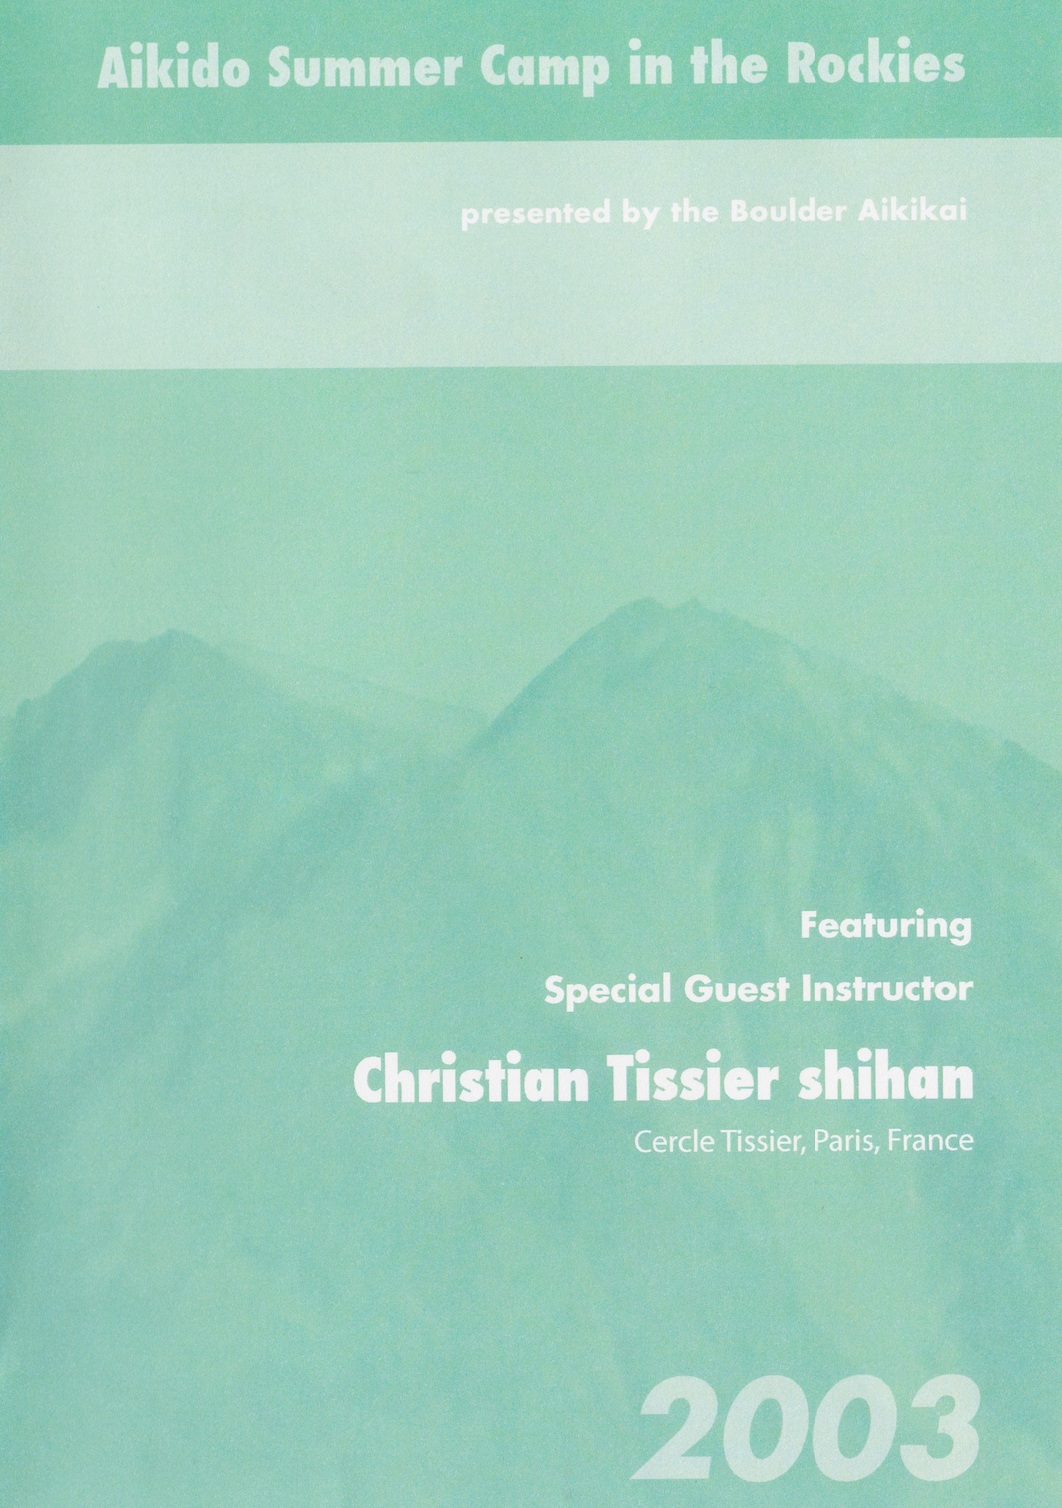 2003 Campamento de verano de Aikido en las Montañas Rocosas DVD de Christian Tissier (usado) 